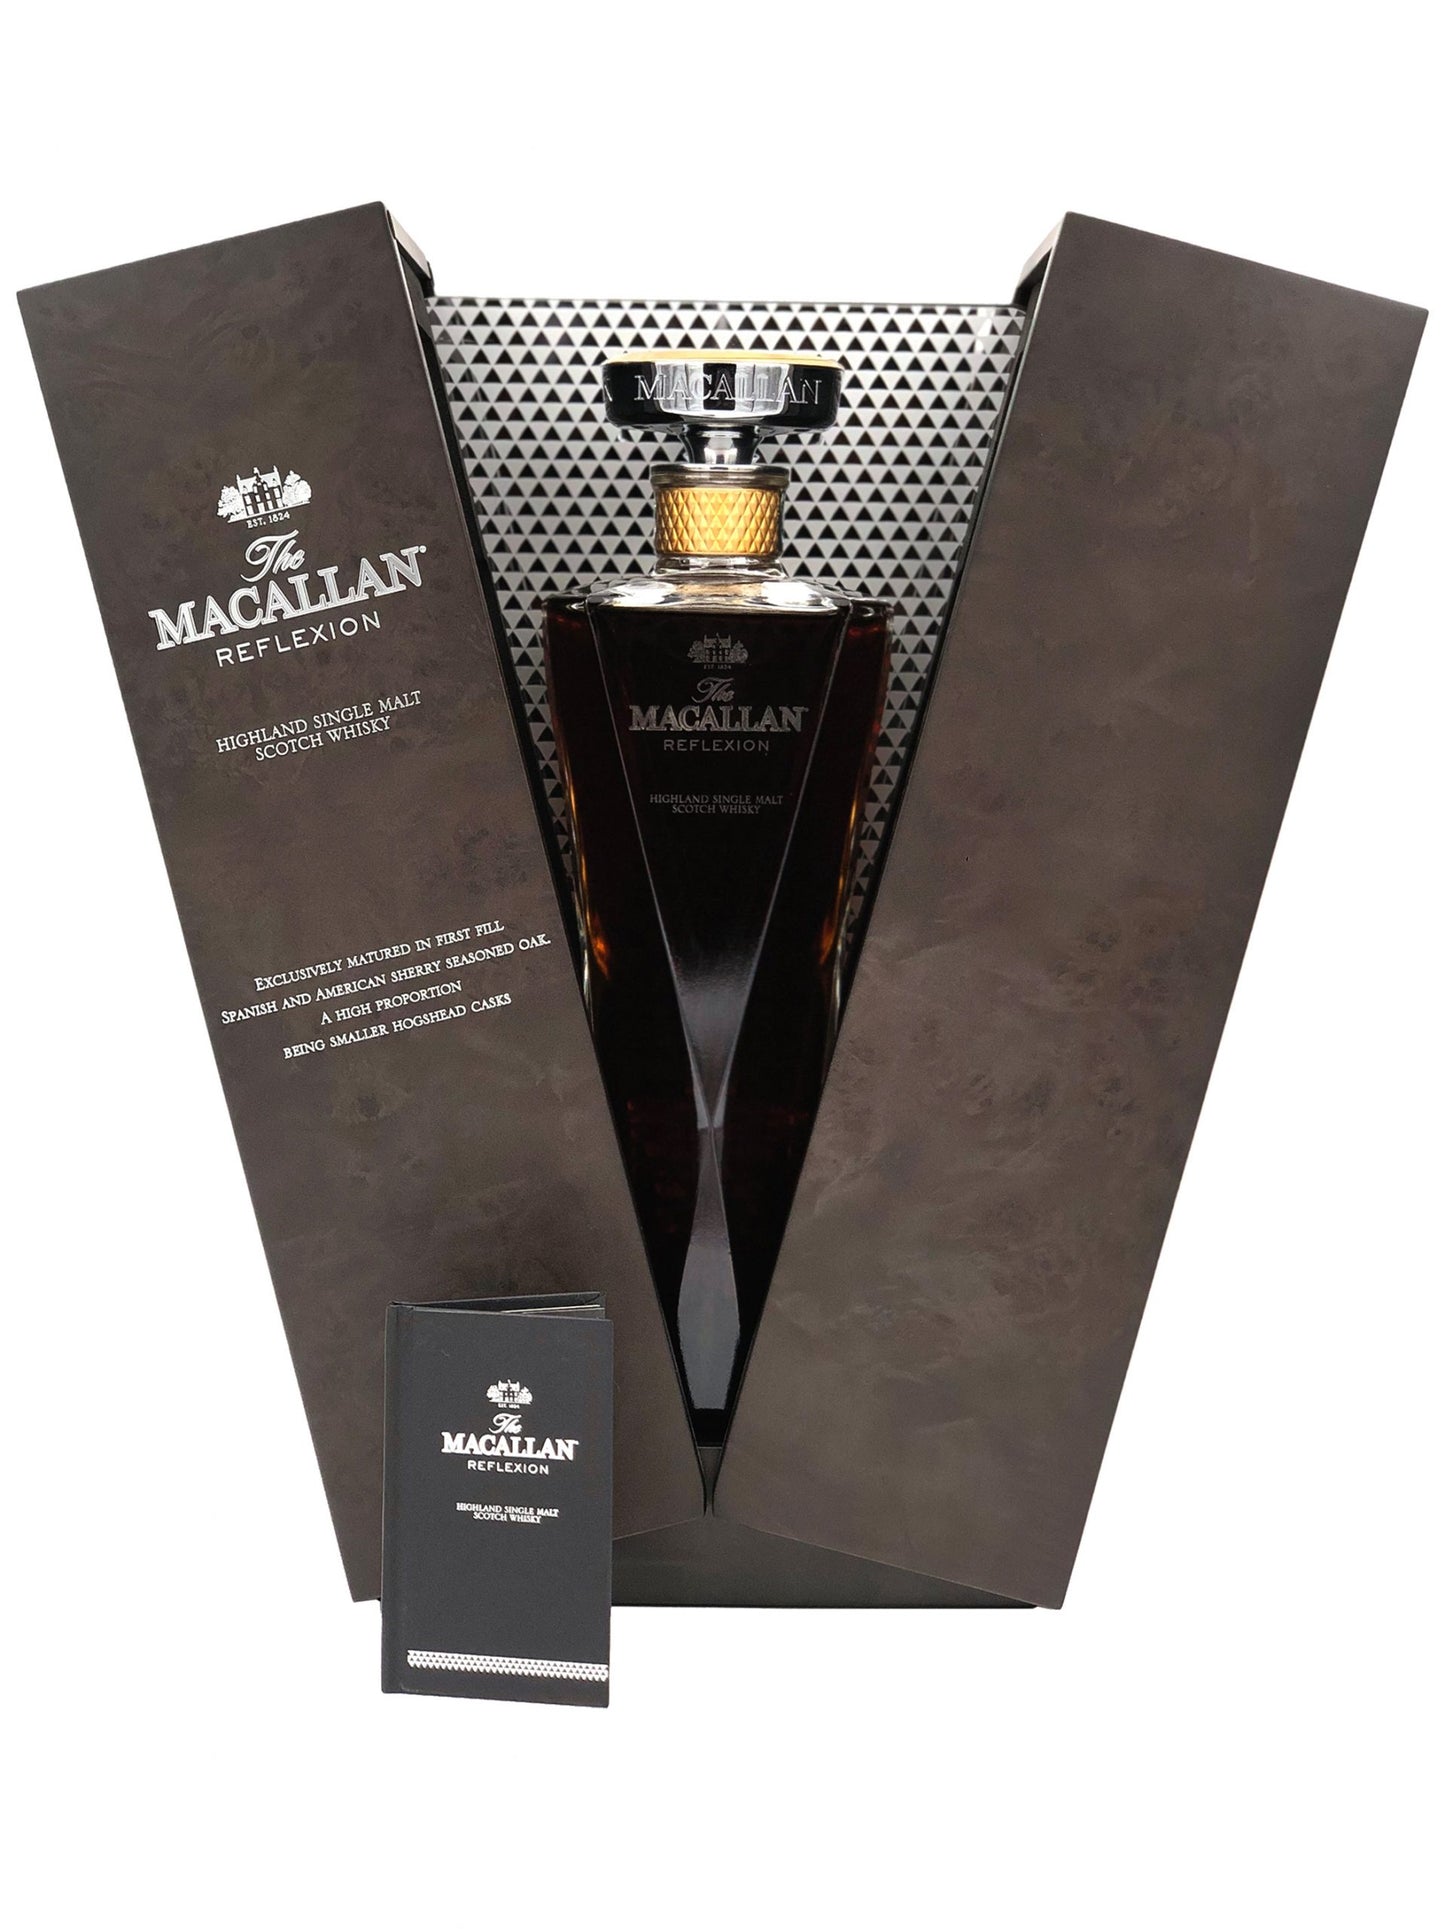 The Macallan Reflexion Whisky (70cl; 43%)